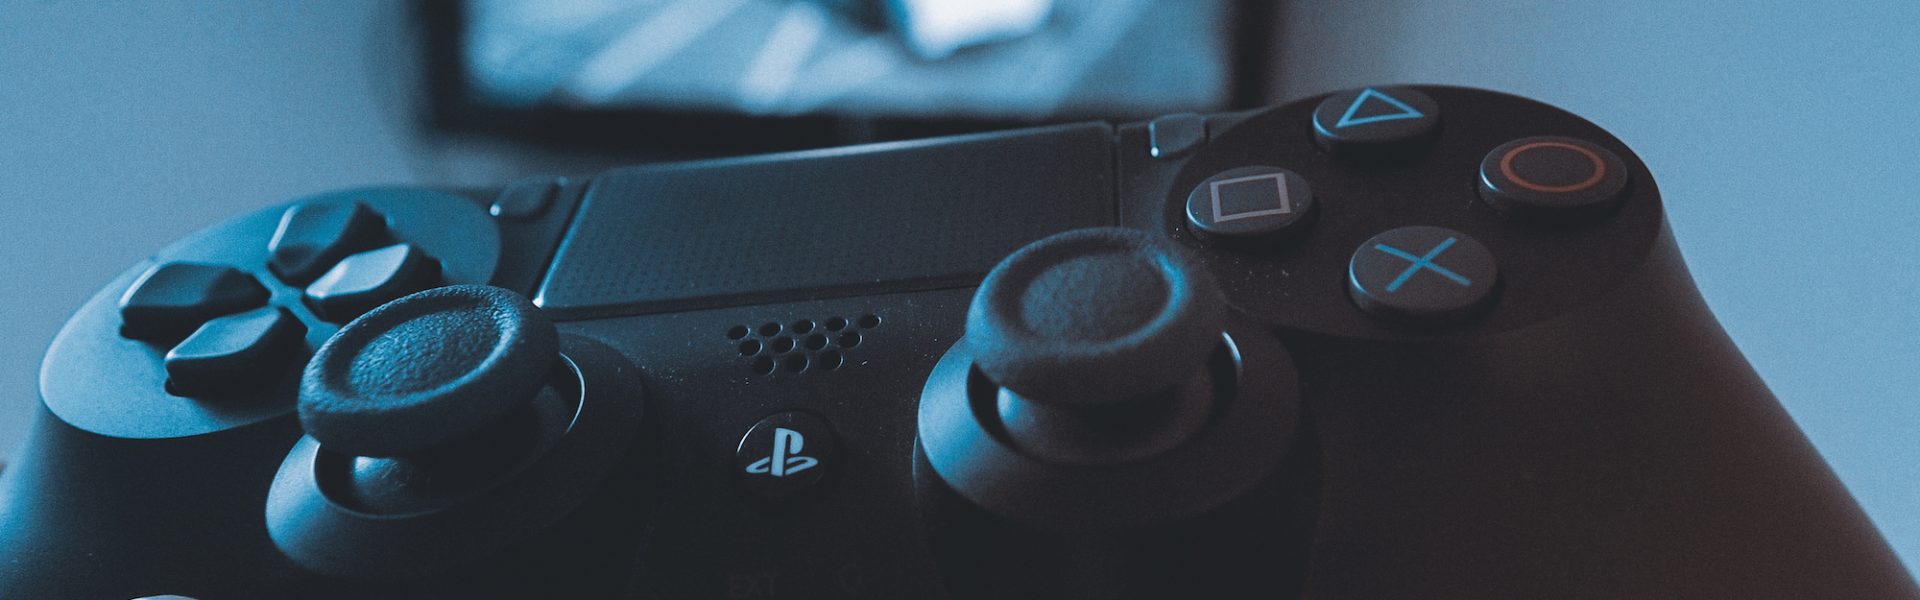 W co zagramy na konsoli Sony PlayStation 5 sprawdz